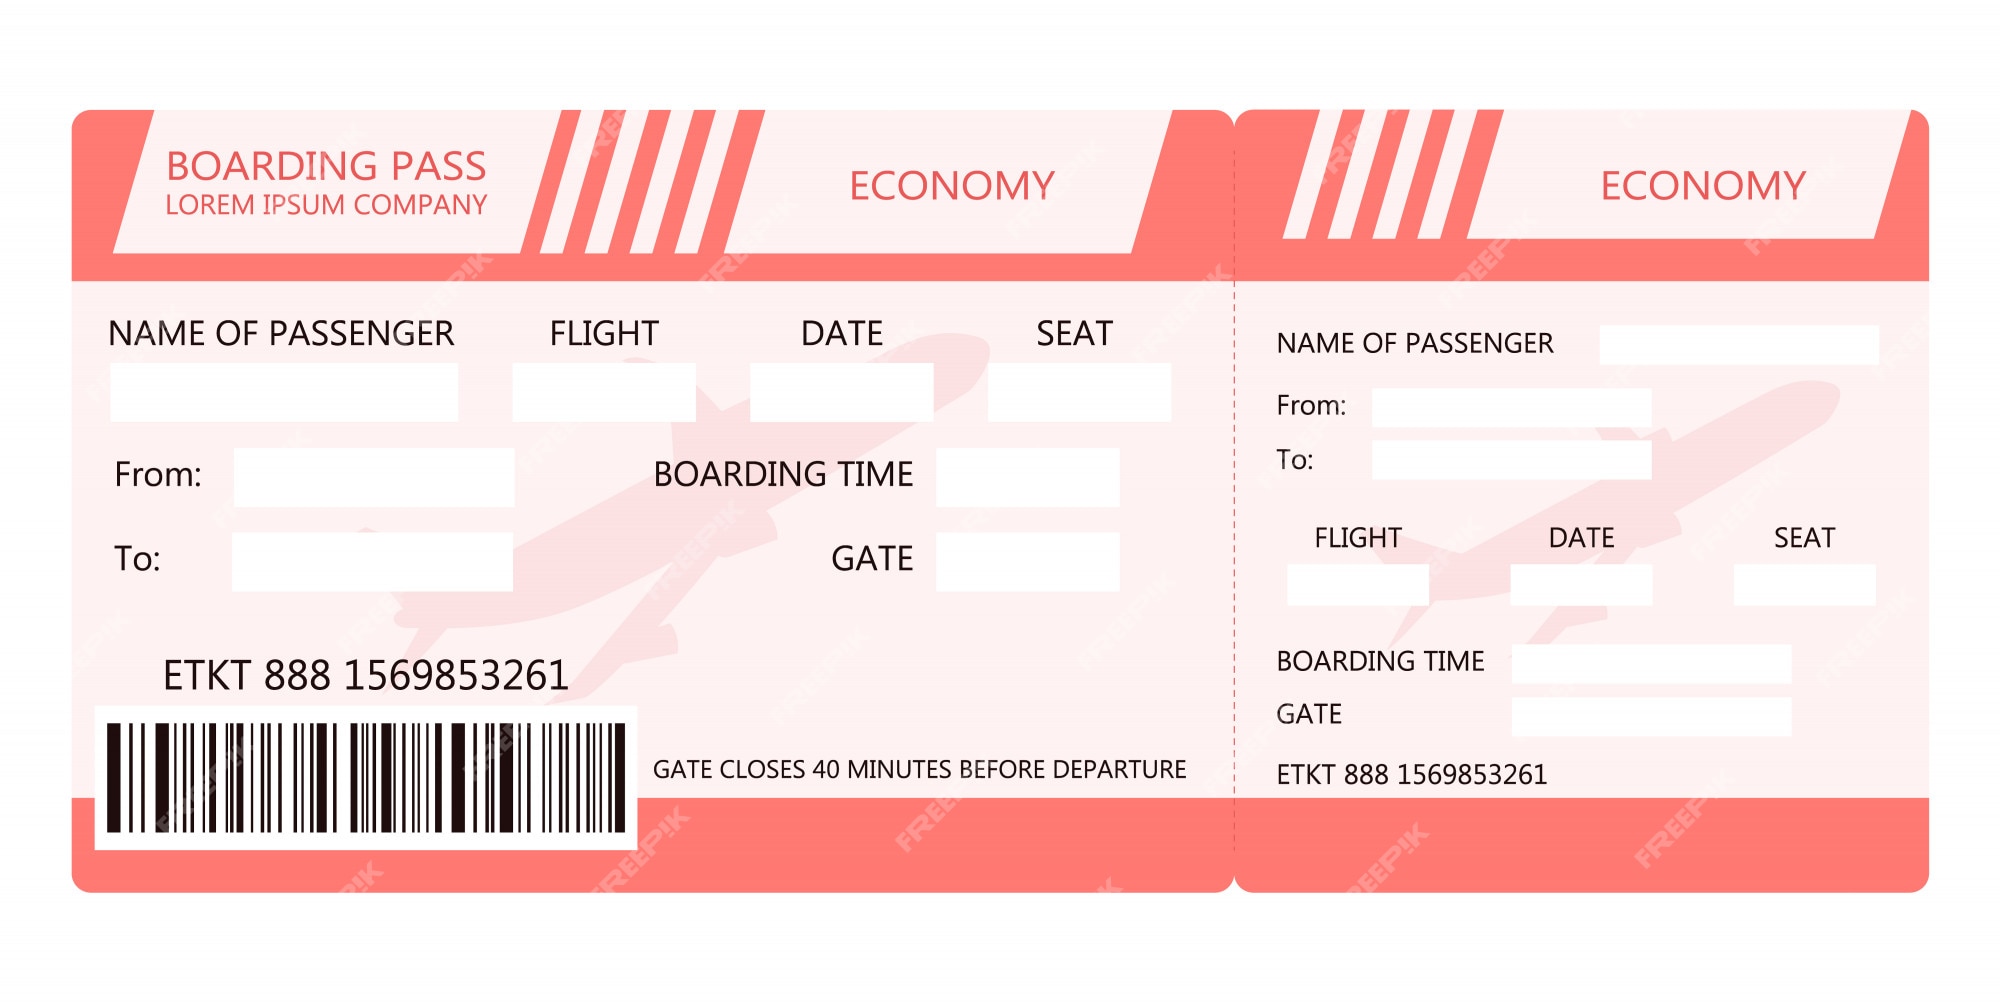 Boleto avión tarjeta de embarque para avión | Vector Premium